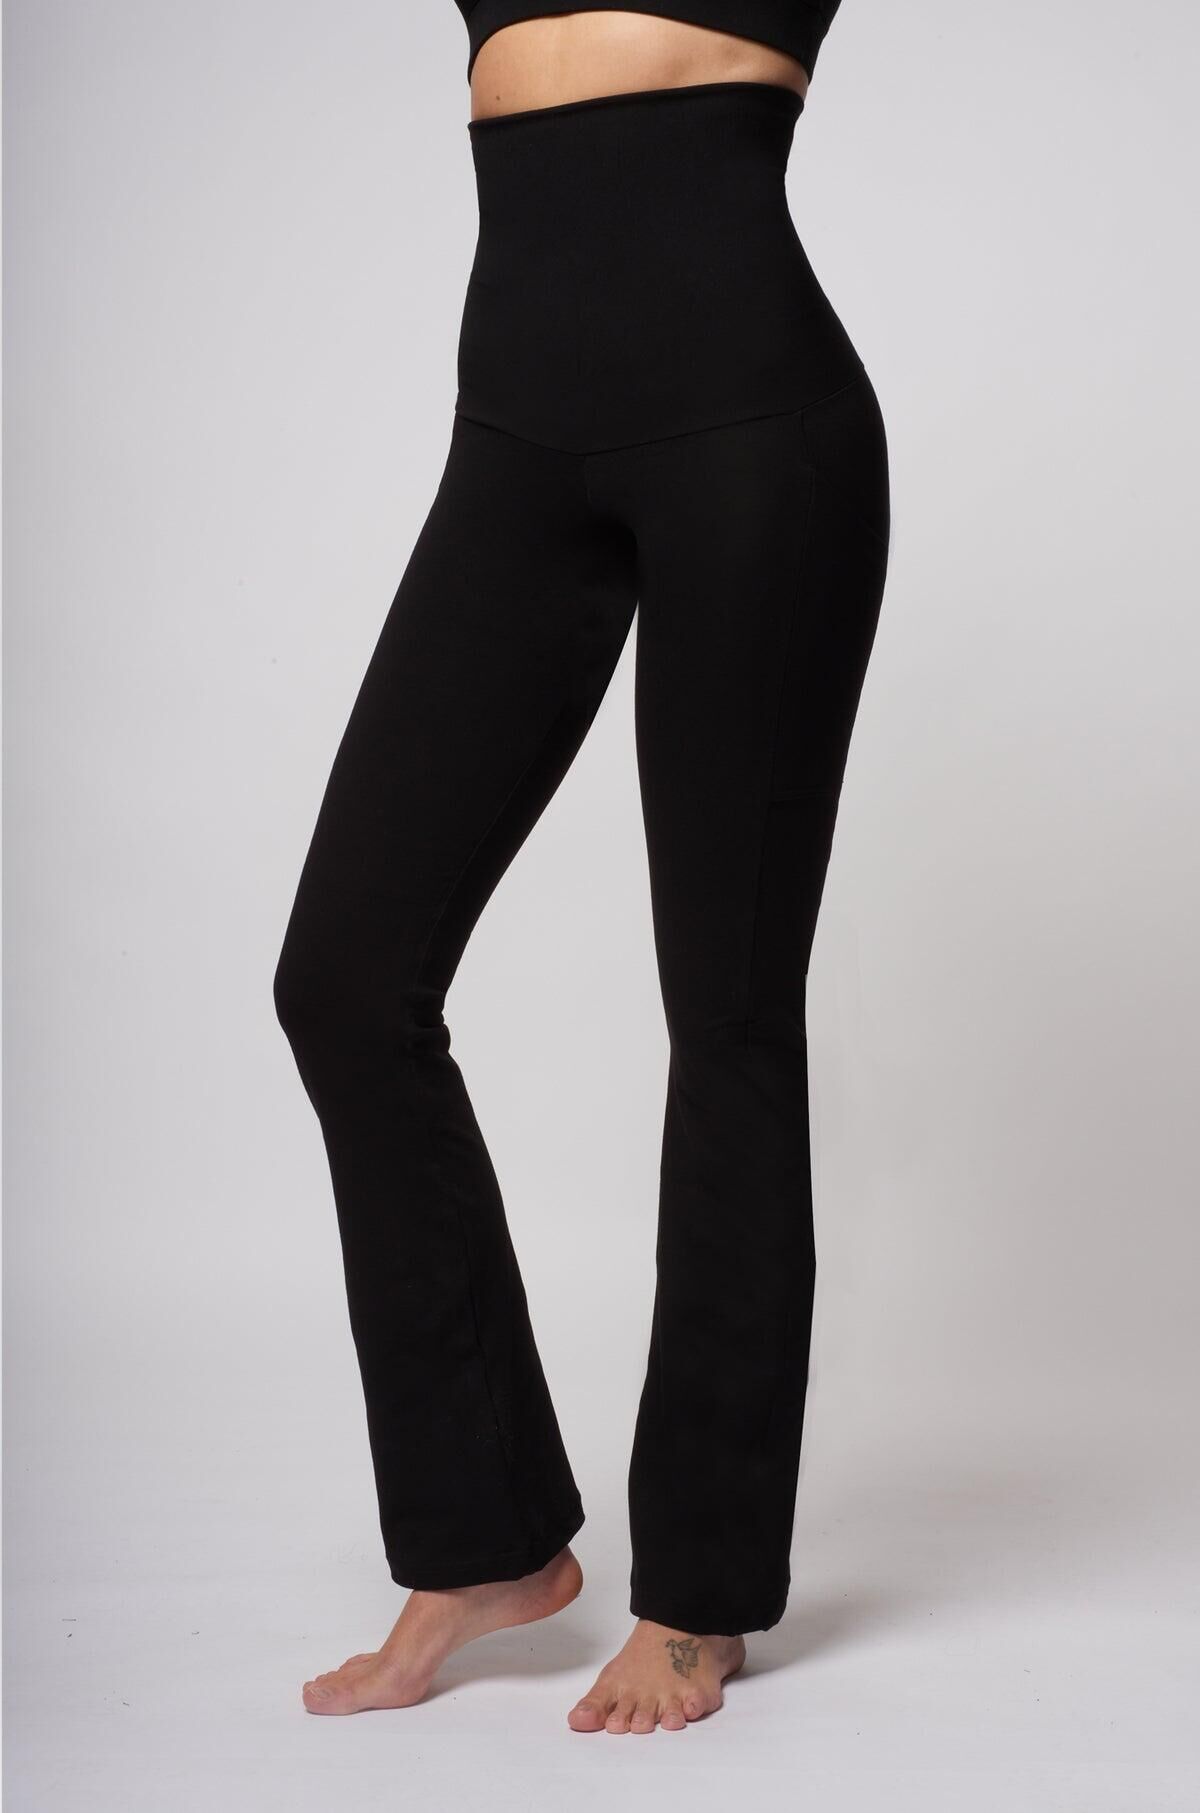 Myga Yoga Pants - Womens High Waisted Full Length Leggings for